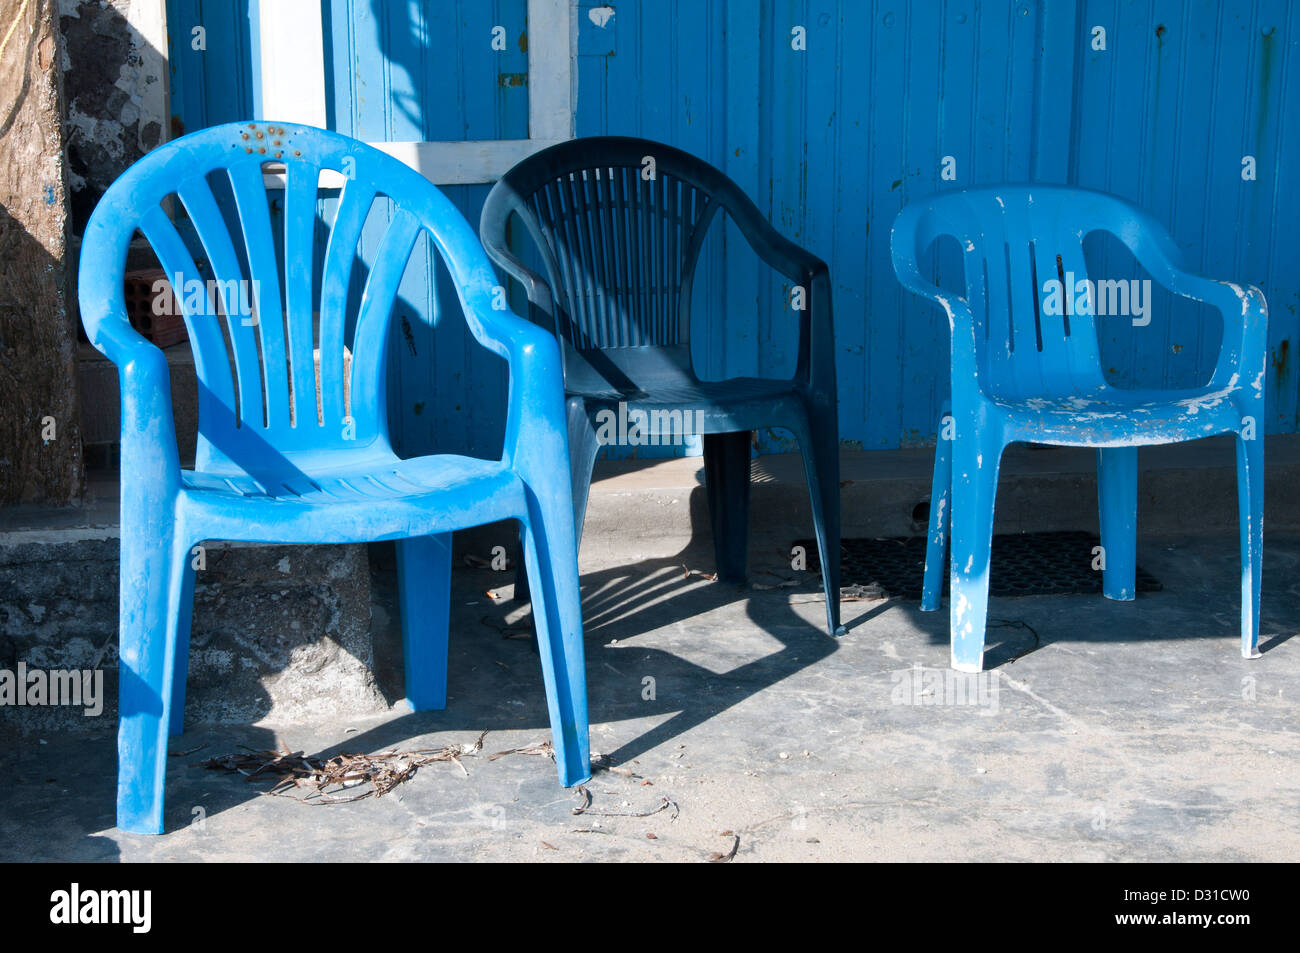 Drei blaue Plastikstühle durch eine blaue Tür. Stockfoto